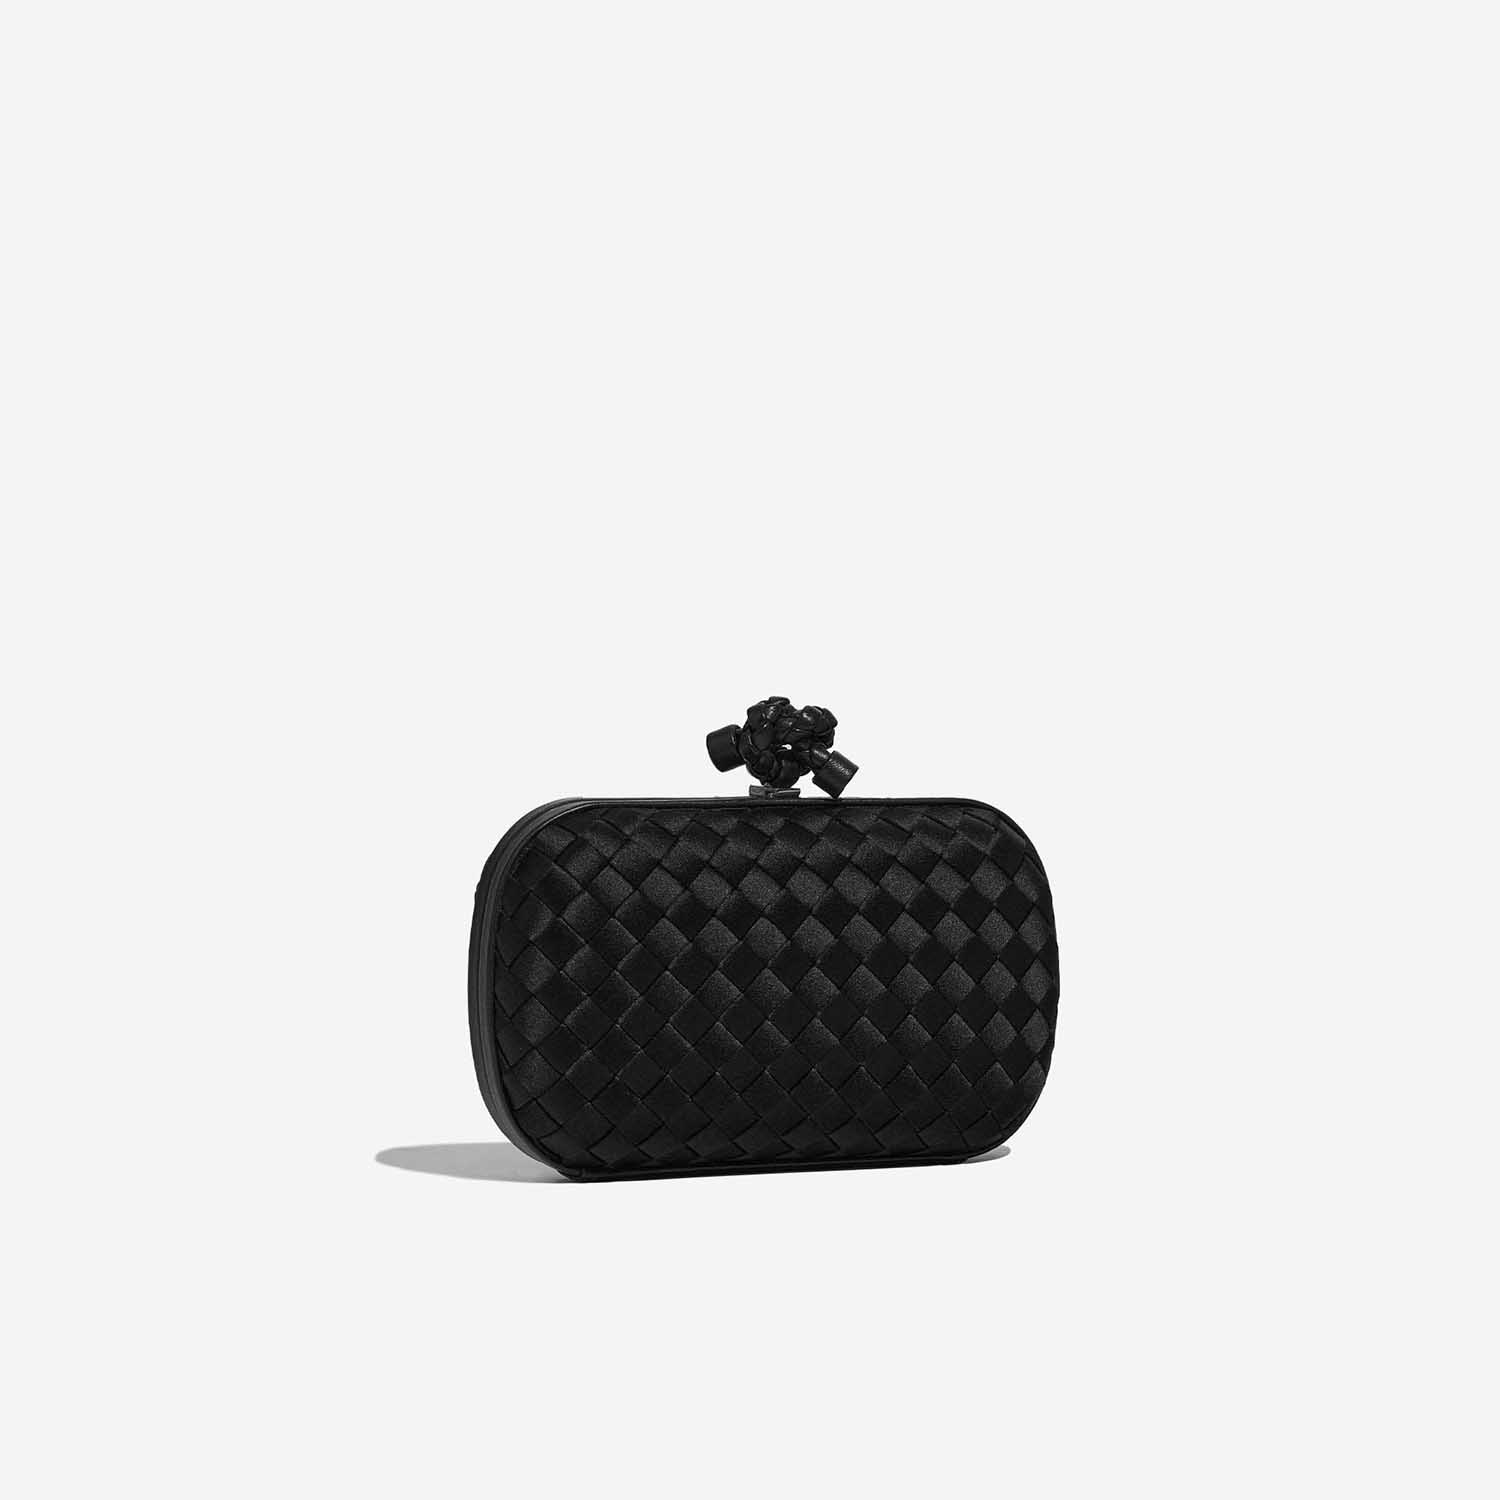 Pre-owned Bottega Veneta bag Knot Chain Clutch Satin Black Black Side Front | Sell your designer bag on Saclab.com